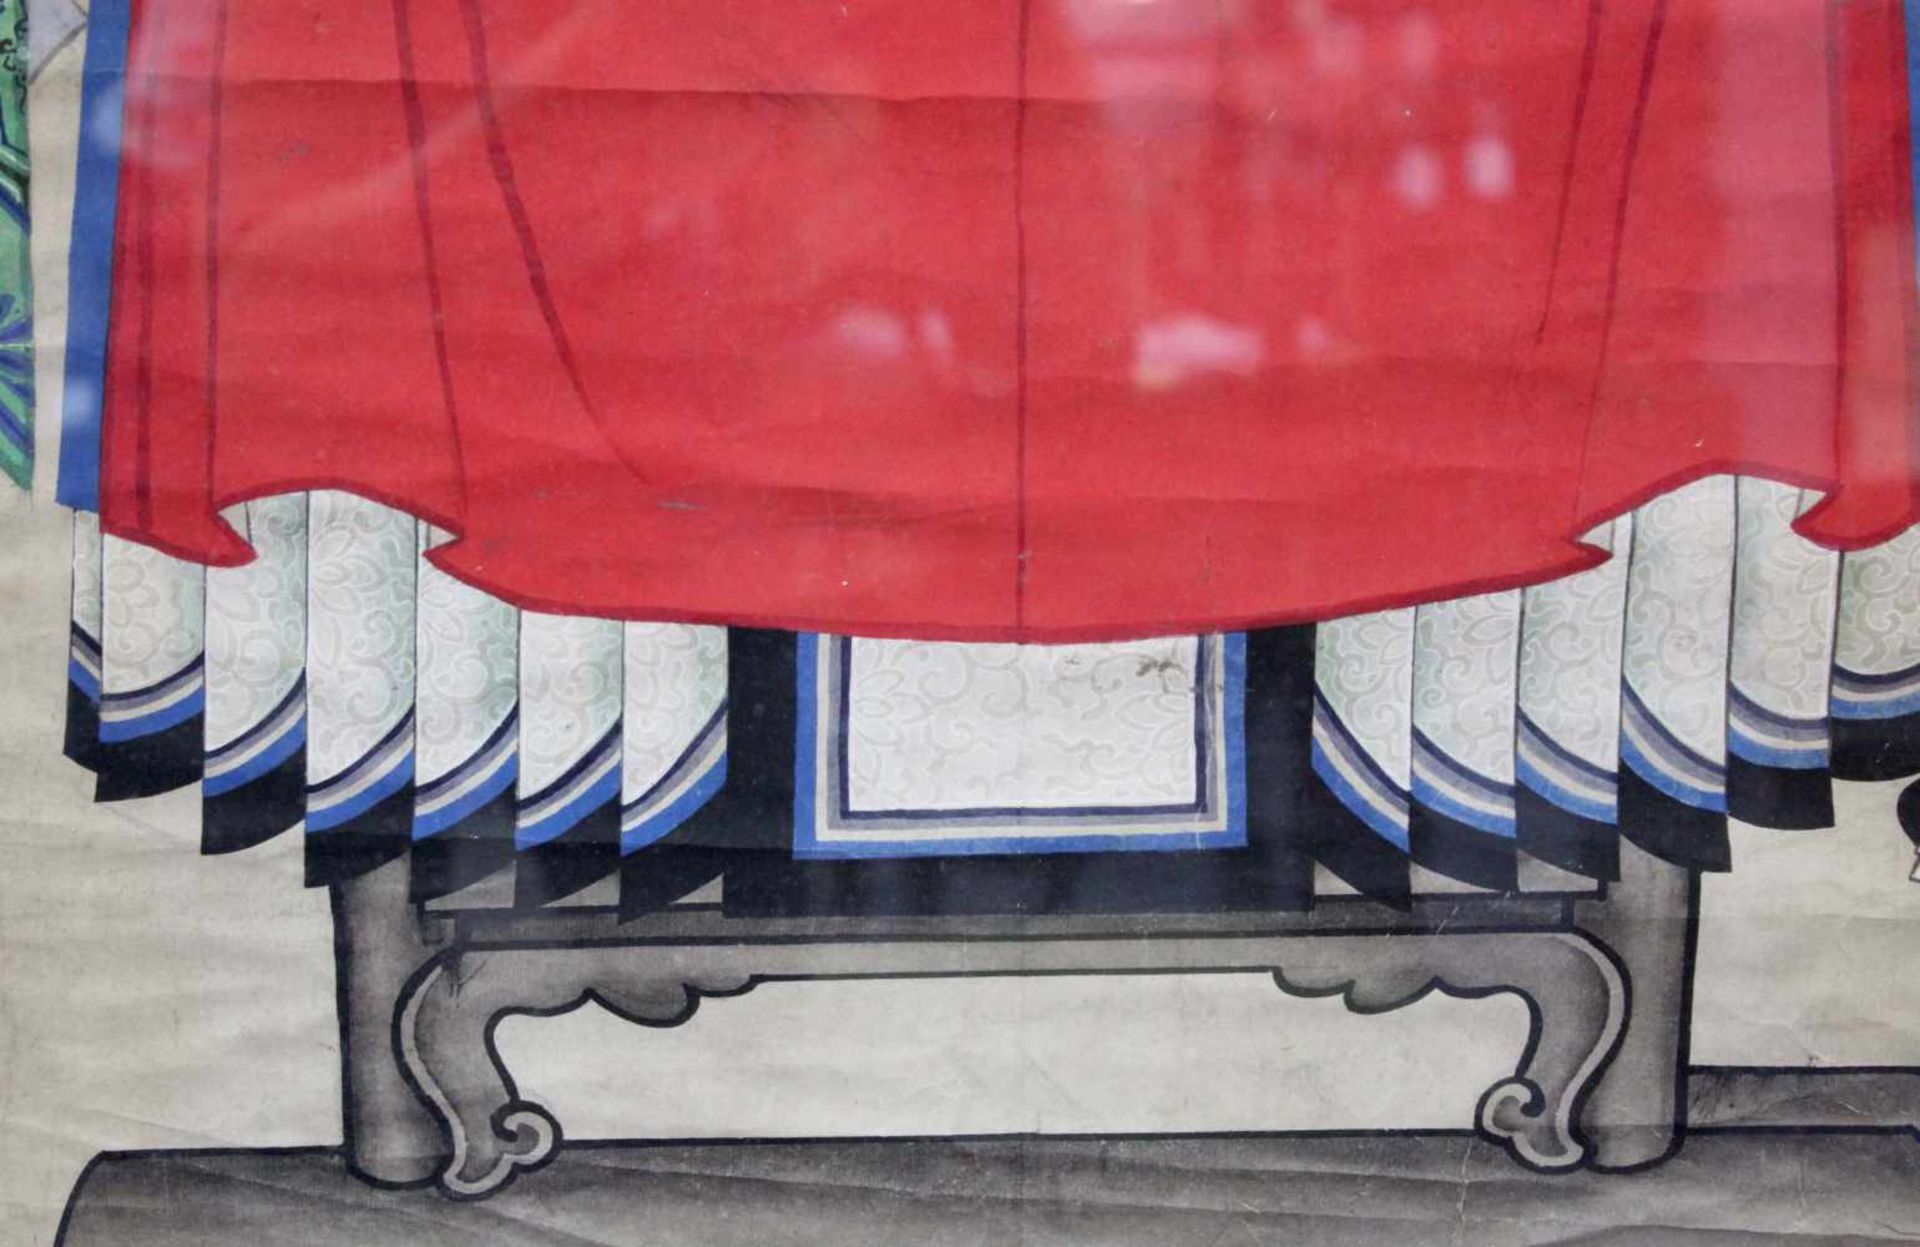 Ahnenbild. Ein Beamter und eine Frau. China.120 cm x 80 cm. Aquarell / Guache auf Papier, gemalt. - Bild 3 aus 9